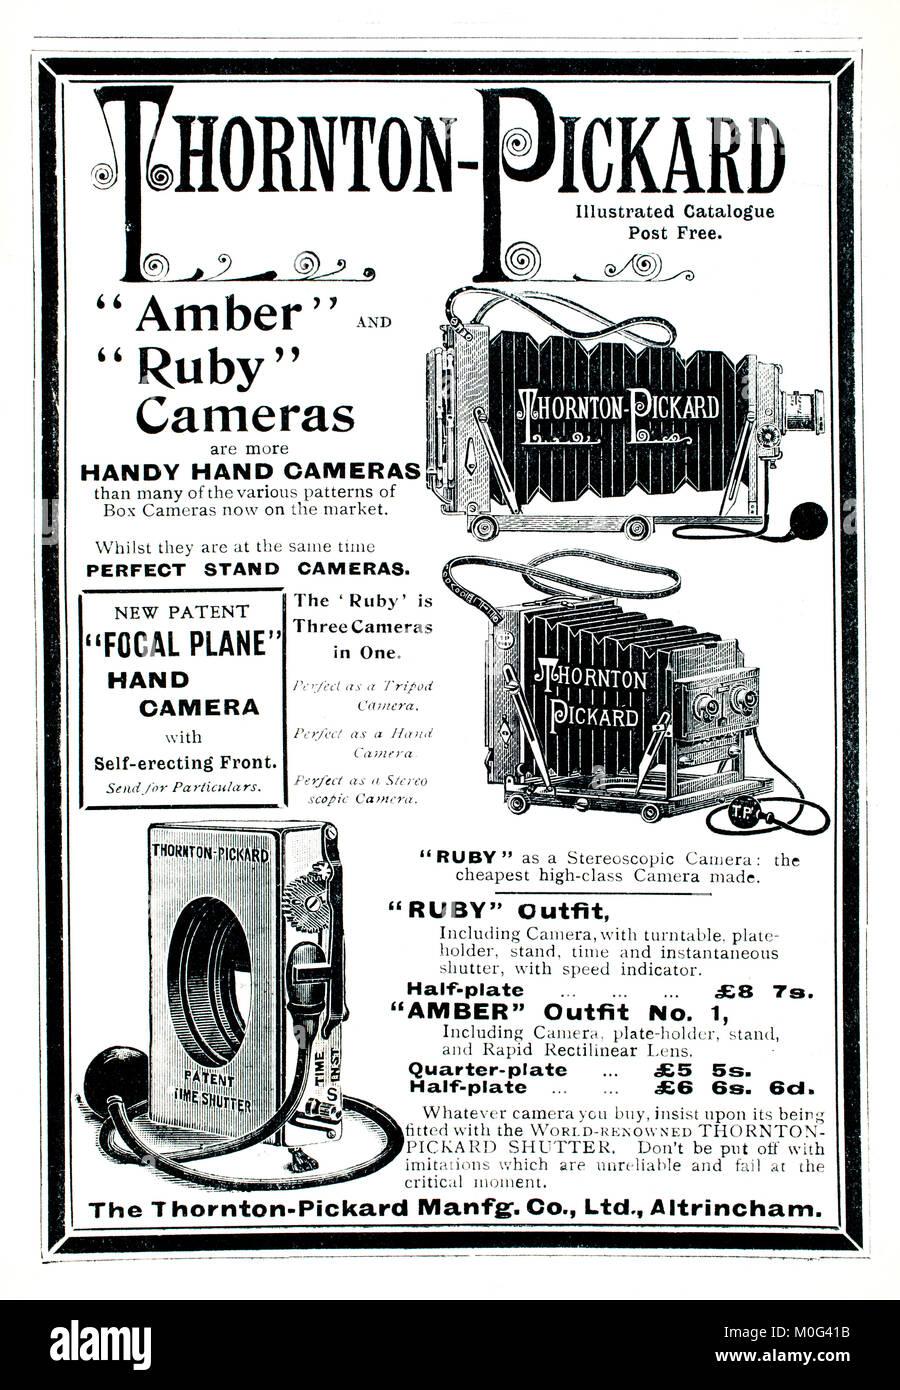 Fotocamera Thornton-Pickard e otturatore annuncio dalla fotografia in un guscio di noce, dal kernel, Iliffe & Sons, 1901 Foto Stock